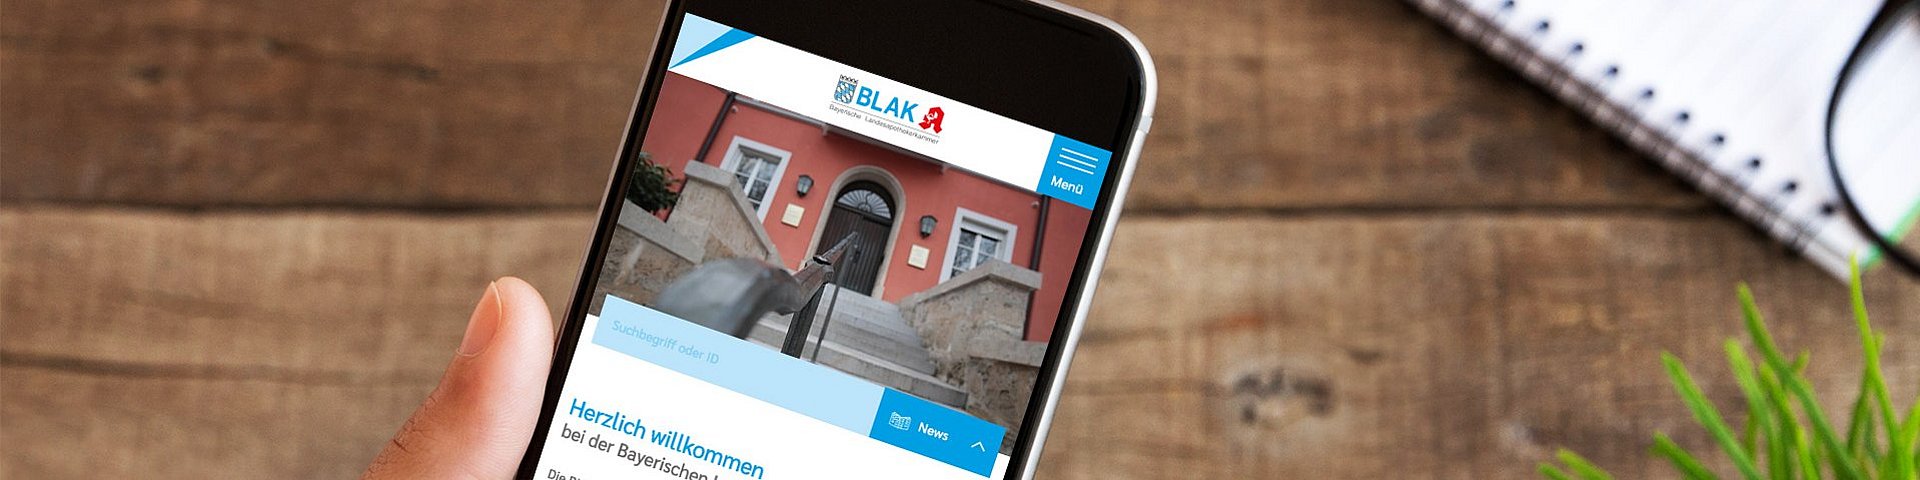 Der neue Webauftritt der Bayerischen Landesapothekerkammer. Es ist ein Smartphone zu sehen, auf welchem die Website der BLAK aufgerufen ist.